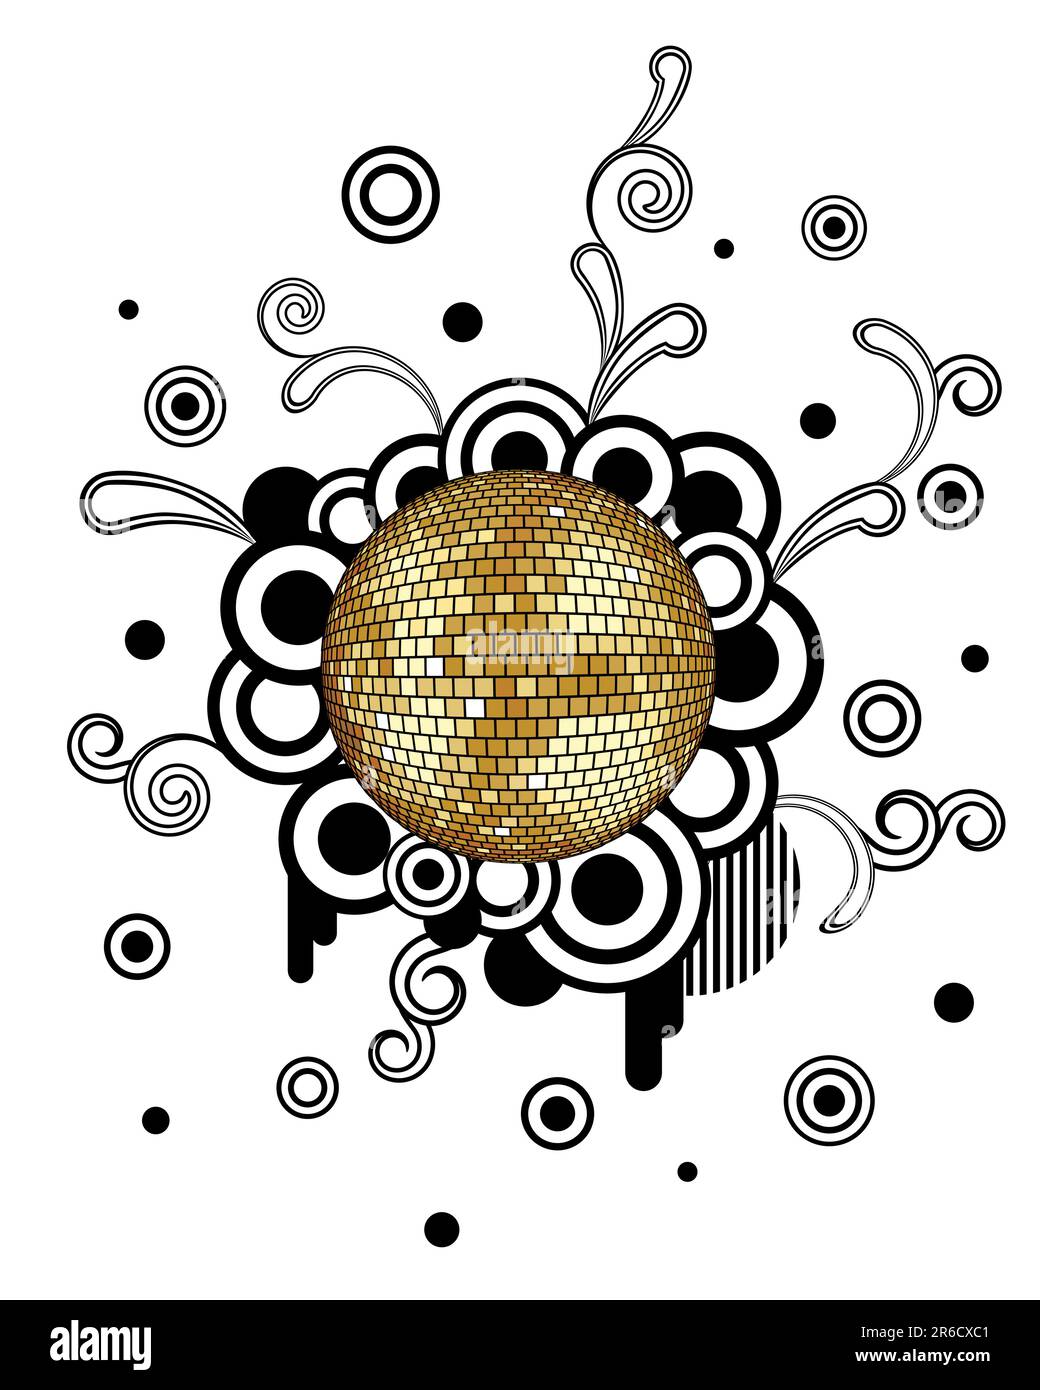 Sticker gold disco ball starburst